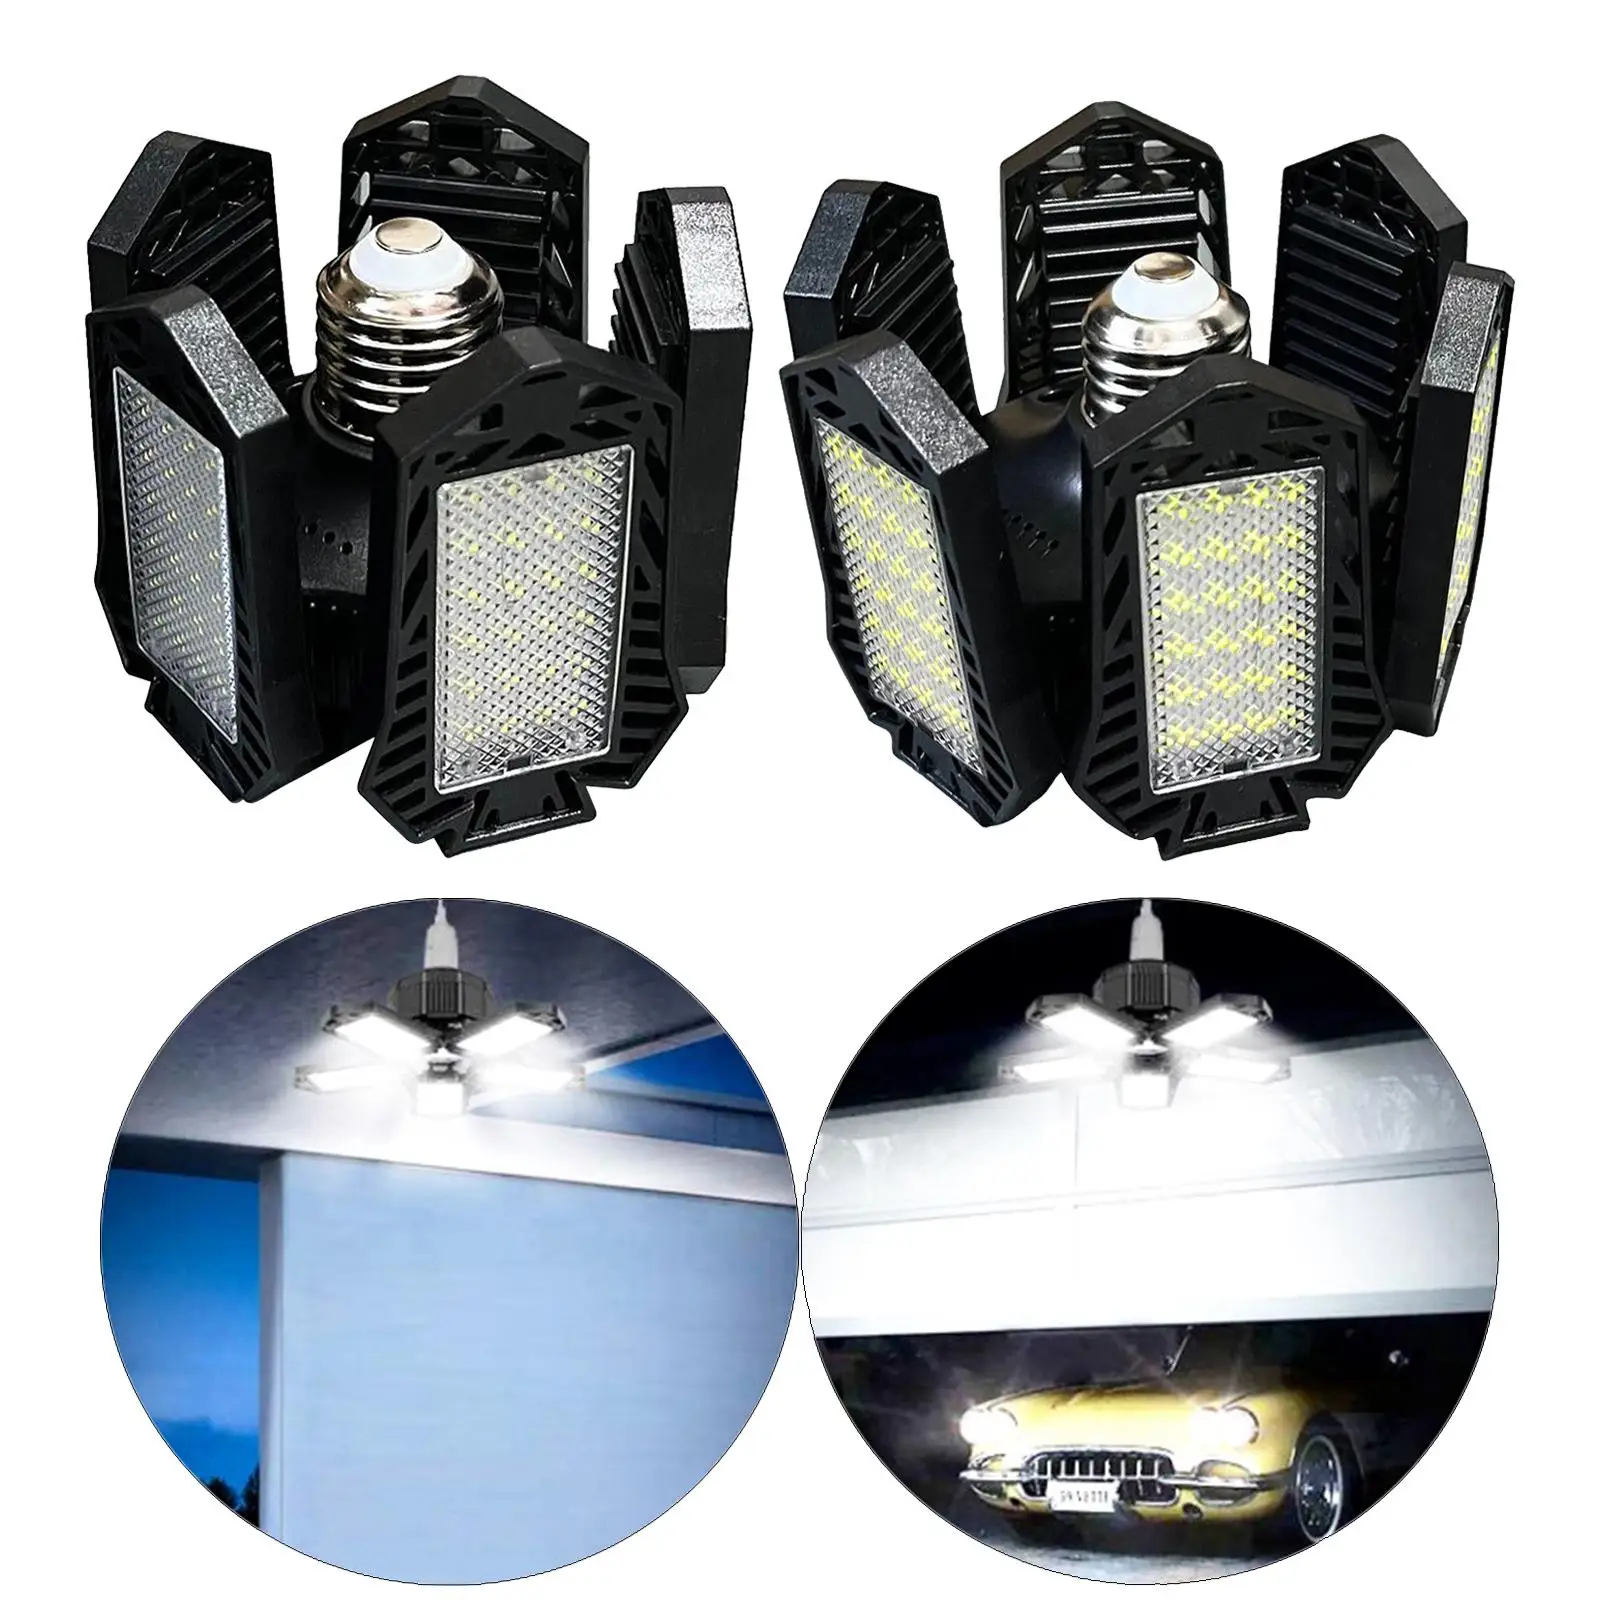 Mini LED Garage Light E27 High Bay Lamp Warehouse Energy Saving 90 Foldable Ceiling Lighting for Warehouse Workshop Lighting